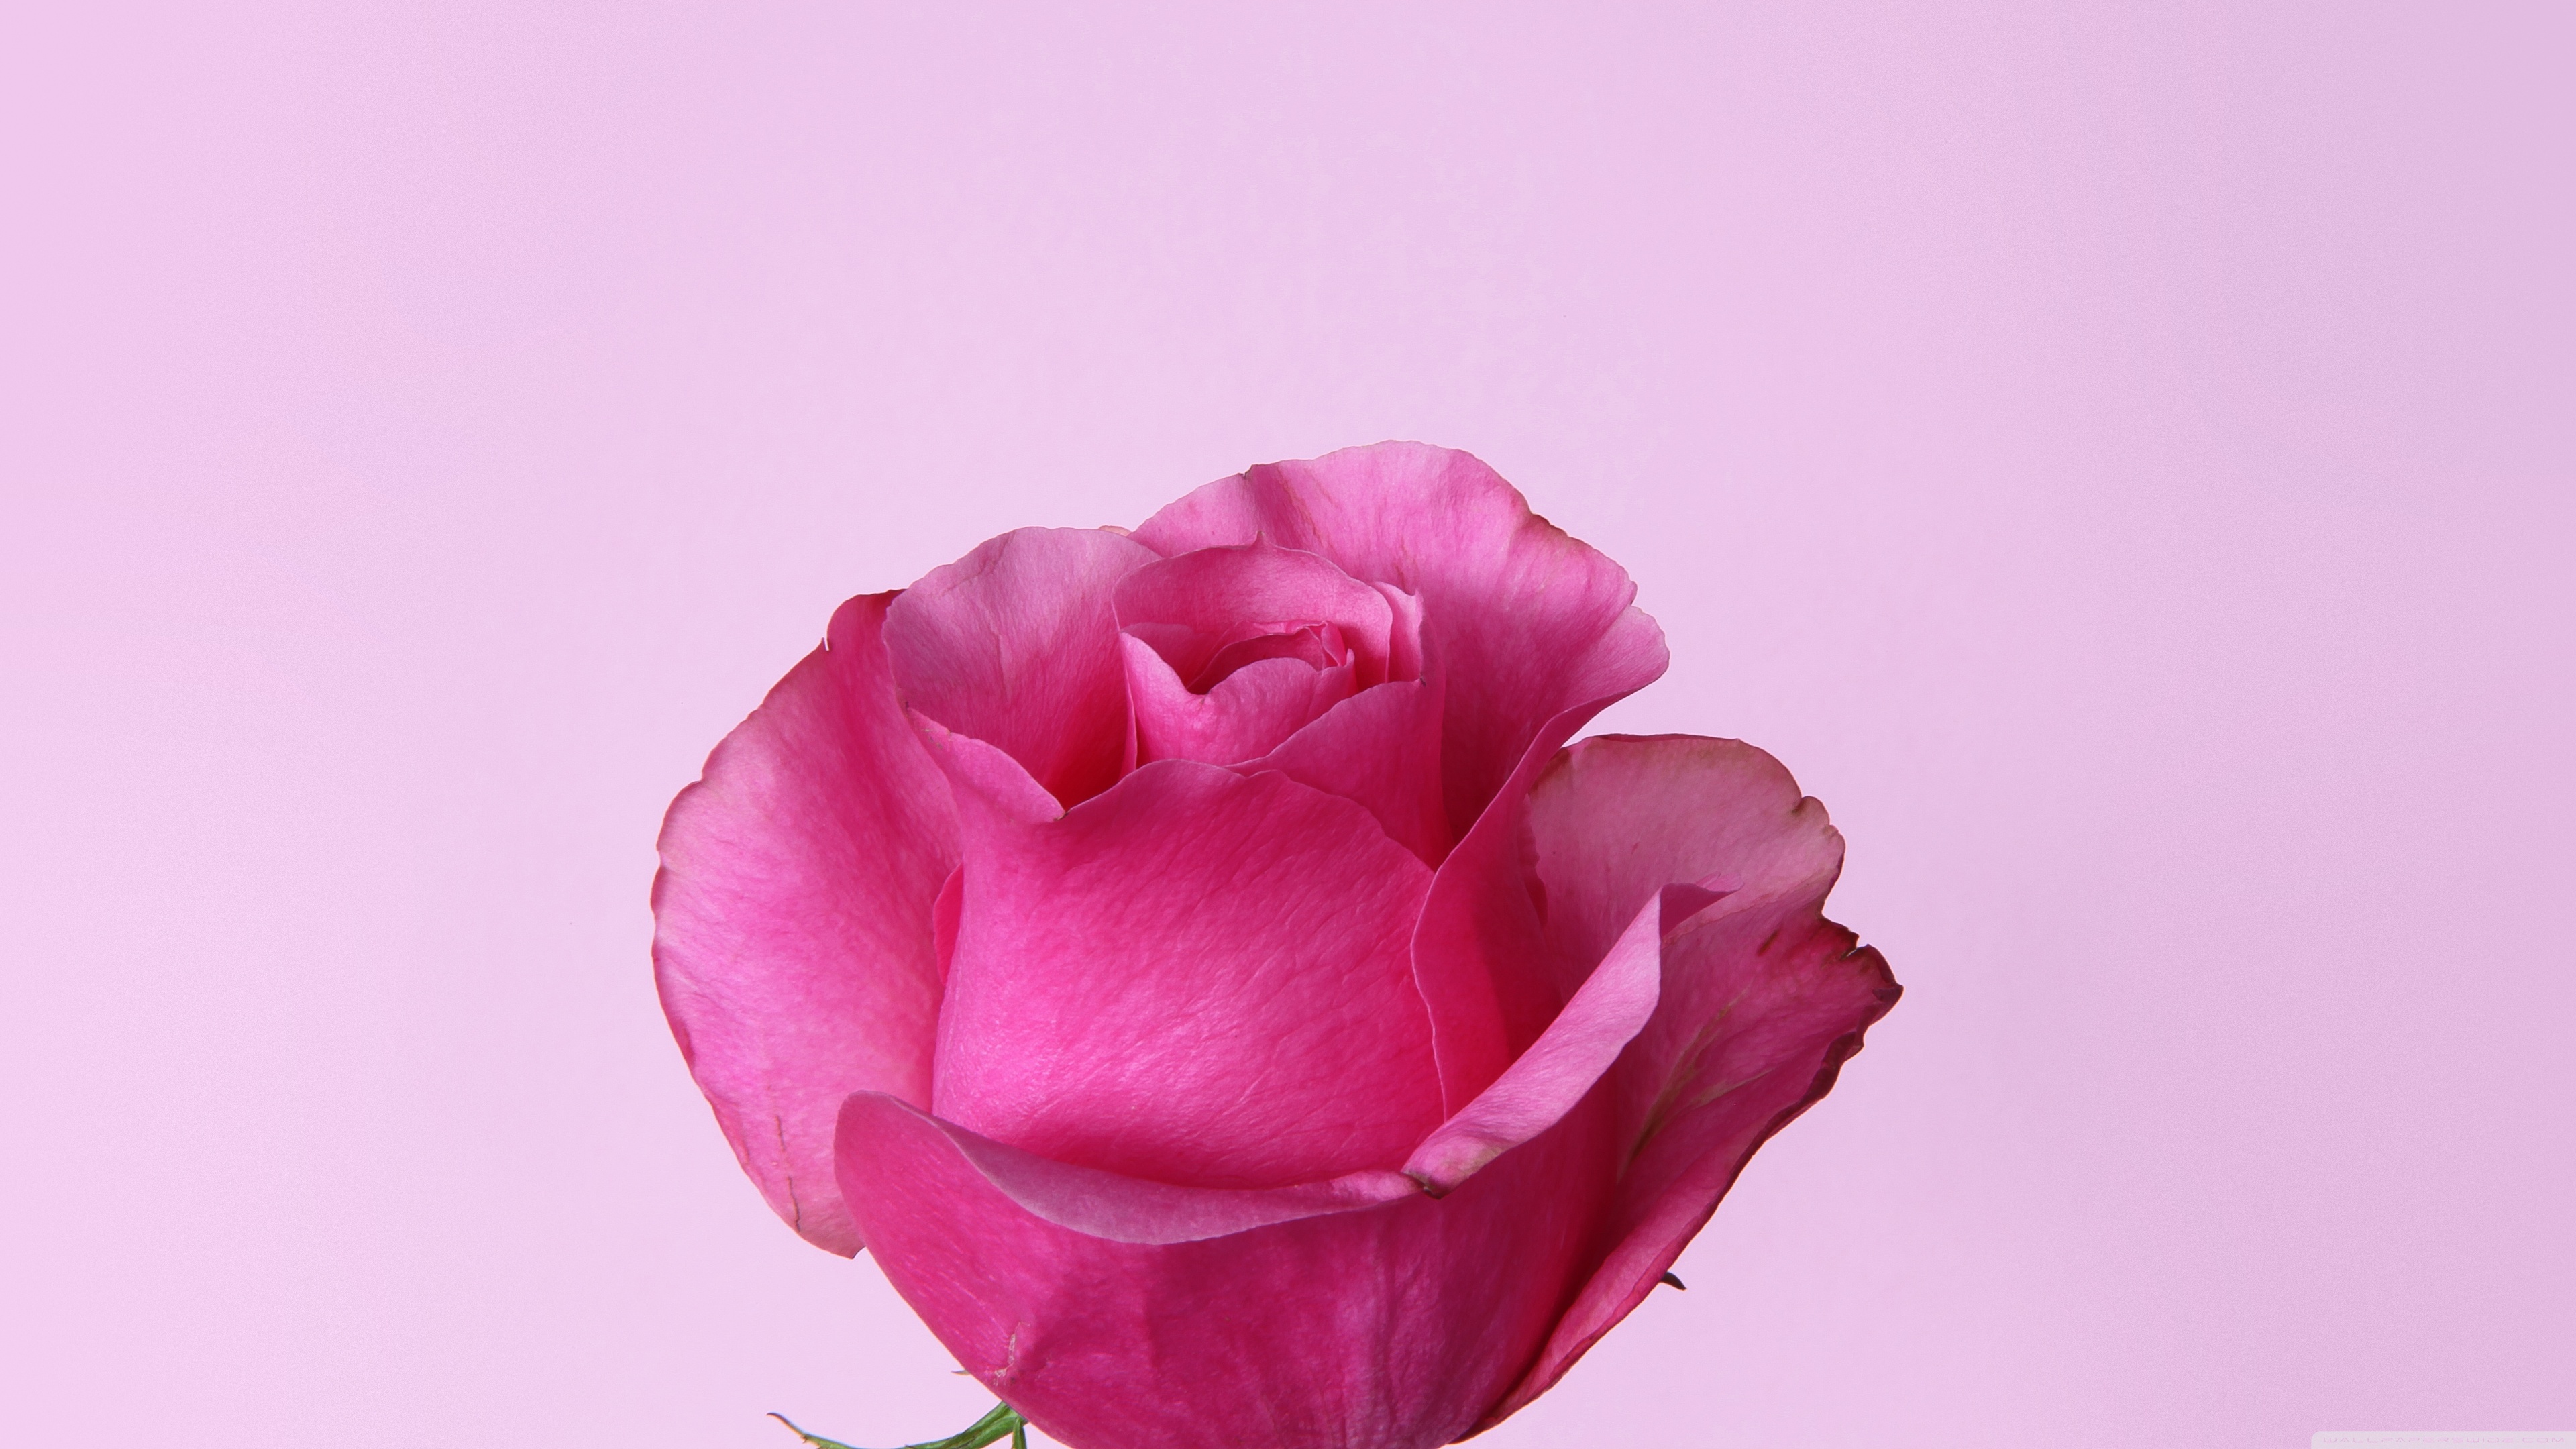 Pink rose photo